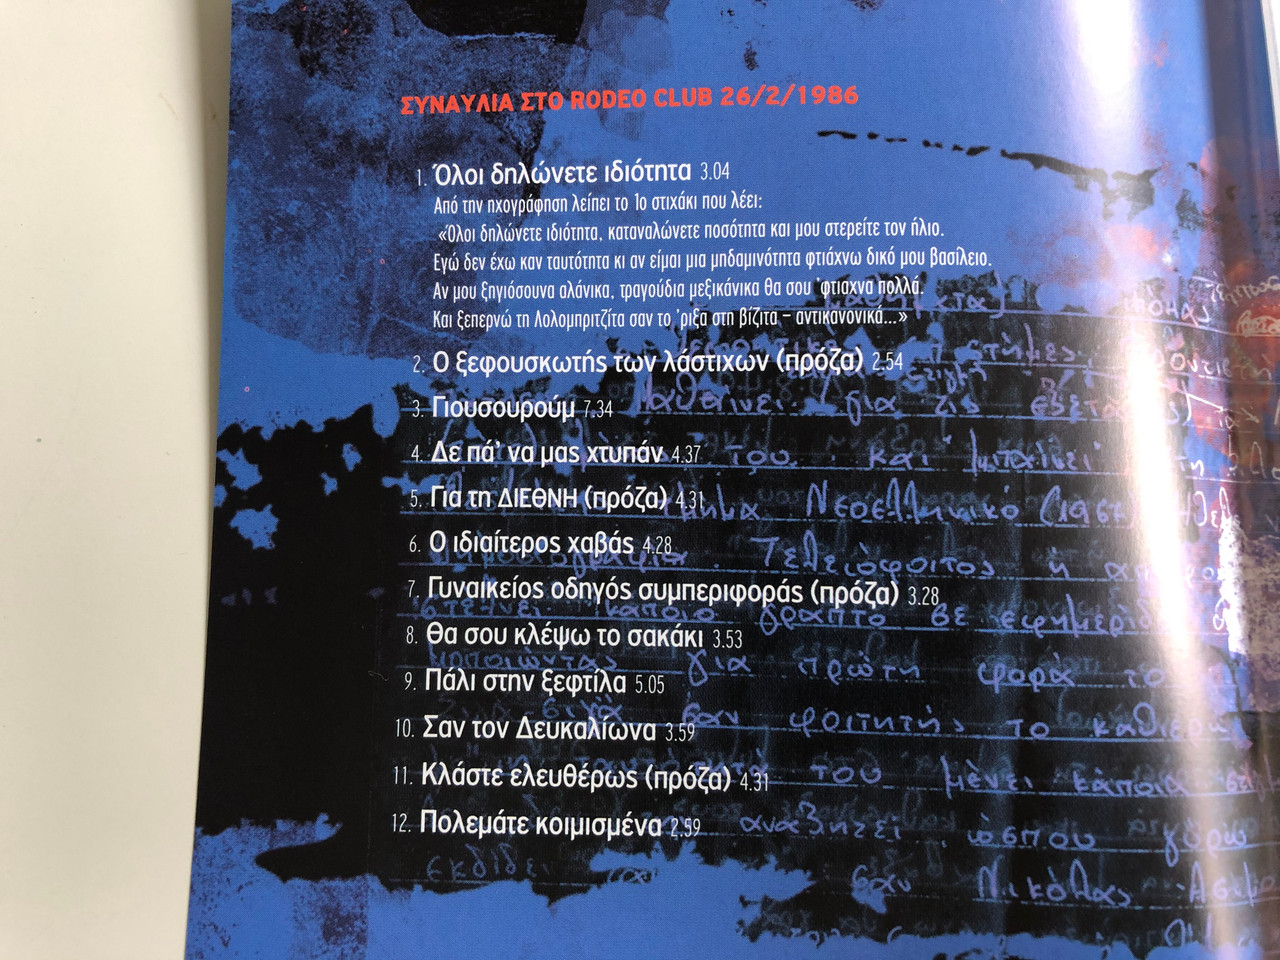 Νικόλας Άσιμος ‎- Nikolas Asimos / Το Τελευταίο Από Τα CD 3 / Audio CD 1986  / ΣΥΝΑΥΛΙΑ ΣΤΟ RODEO CLUB 26/2/1986 / Concert in Rodeo Club -  bibleinmylanguage